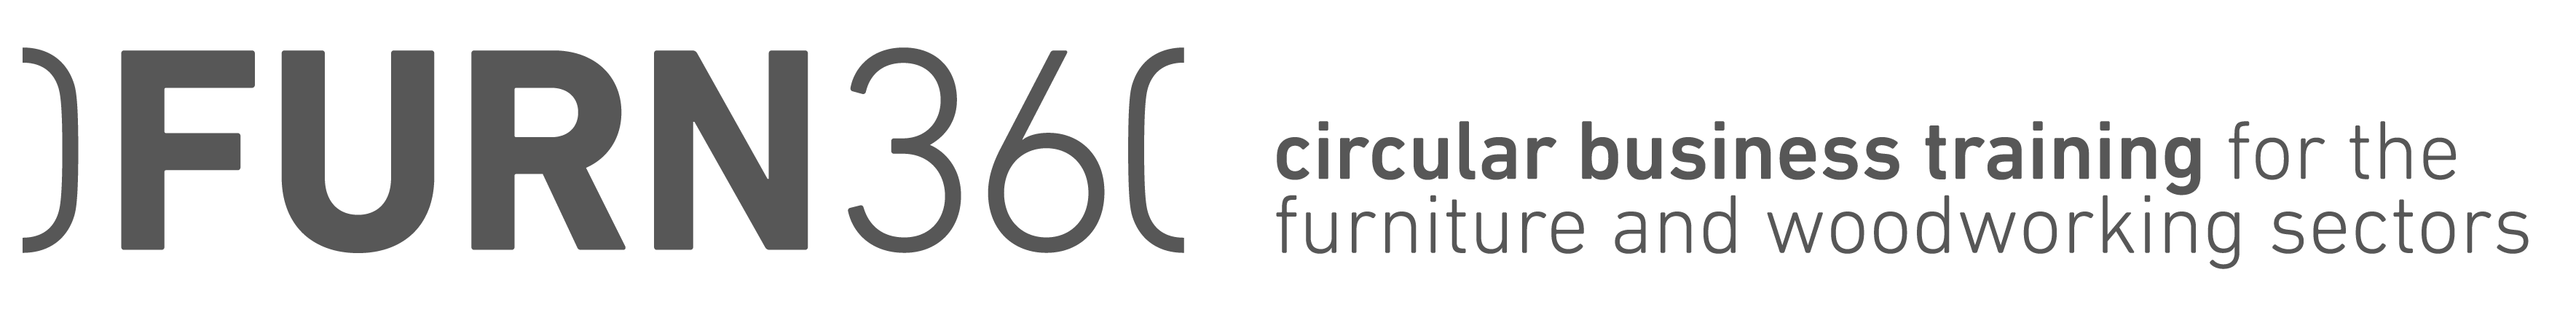 FURN360 logo